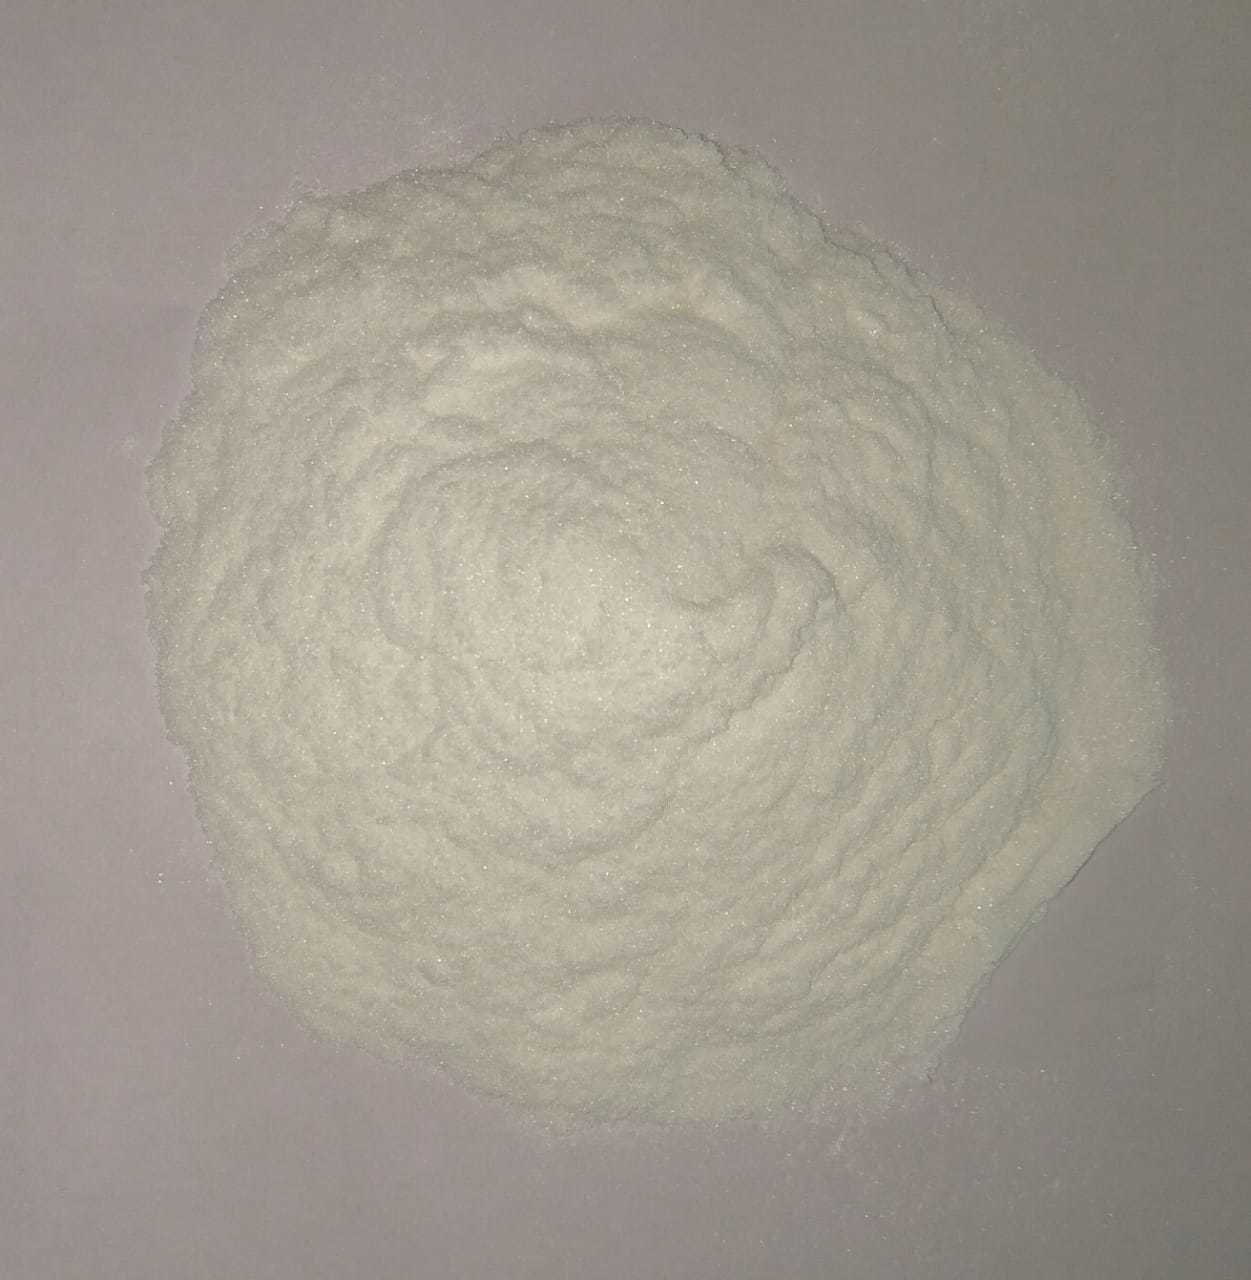 Potassium Silicate Powder for Refractory